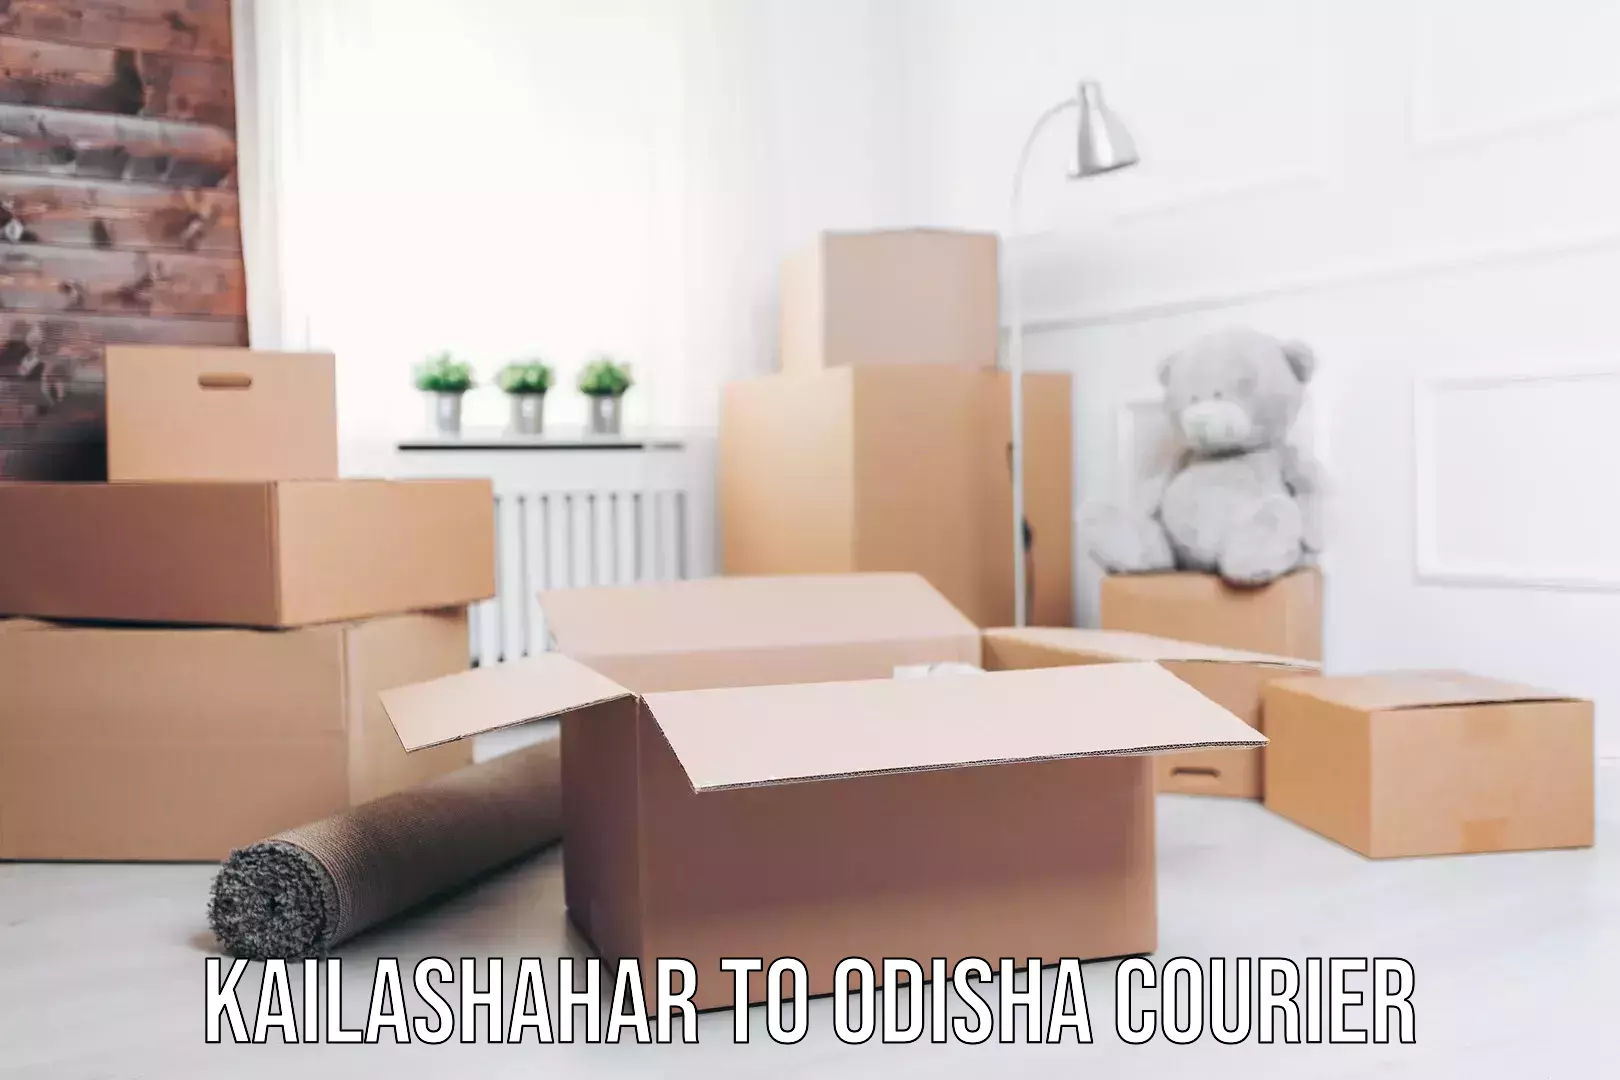 Courier service innovation Kailashahar to Odisha